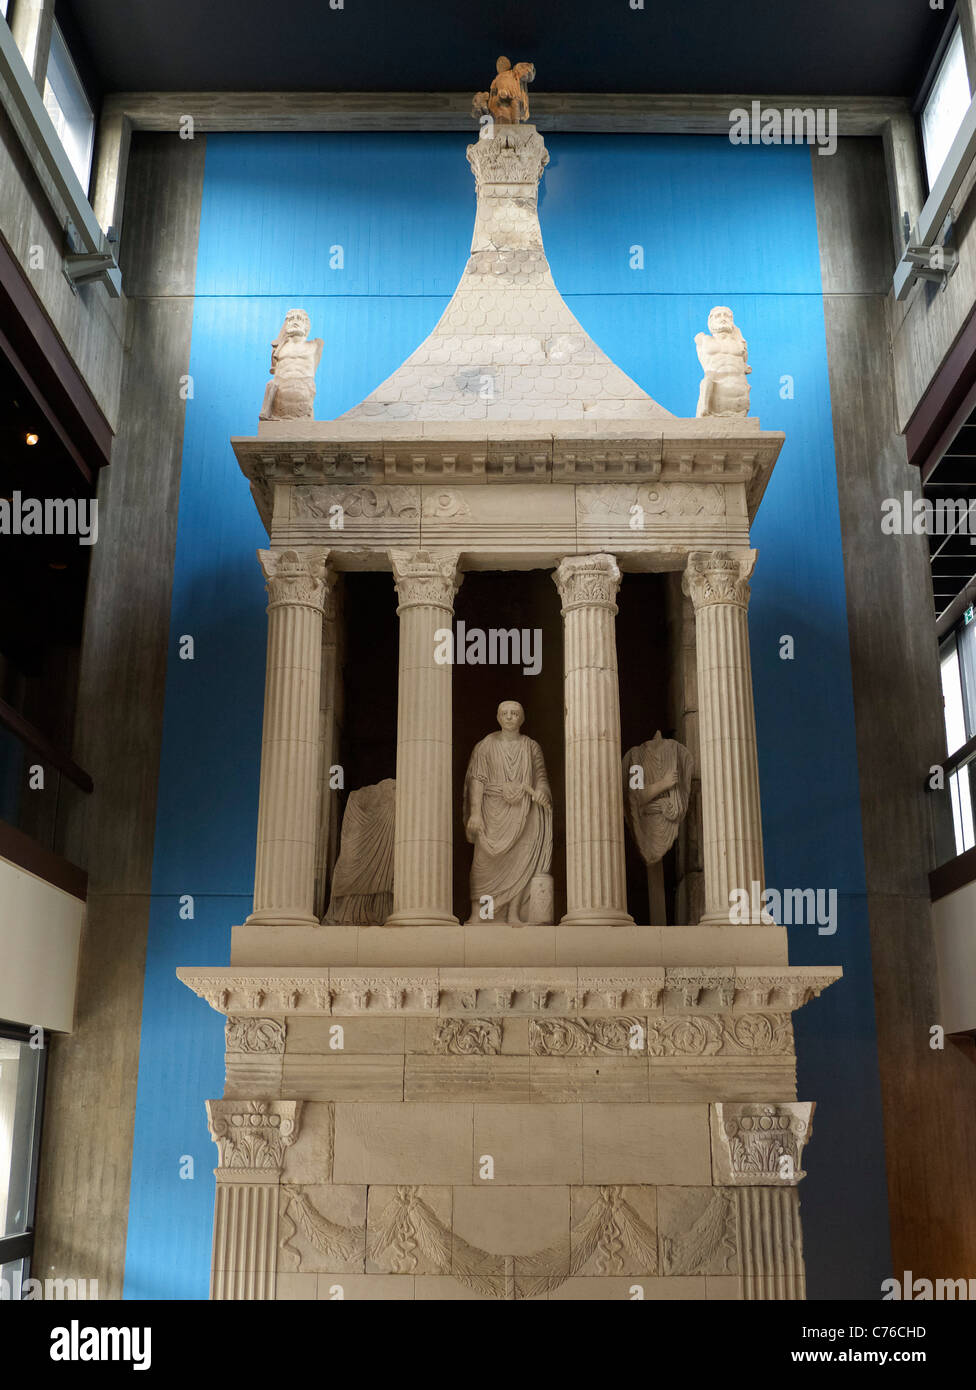 Le sépulcre de Poblicius au musée romain-germanique de Cologne Allemagne Banque D'Images